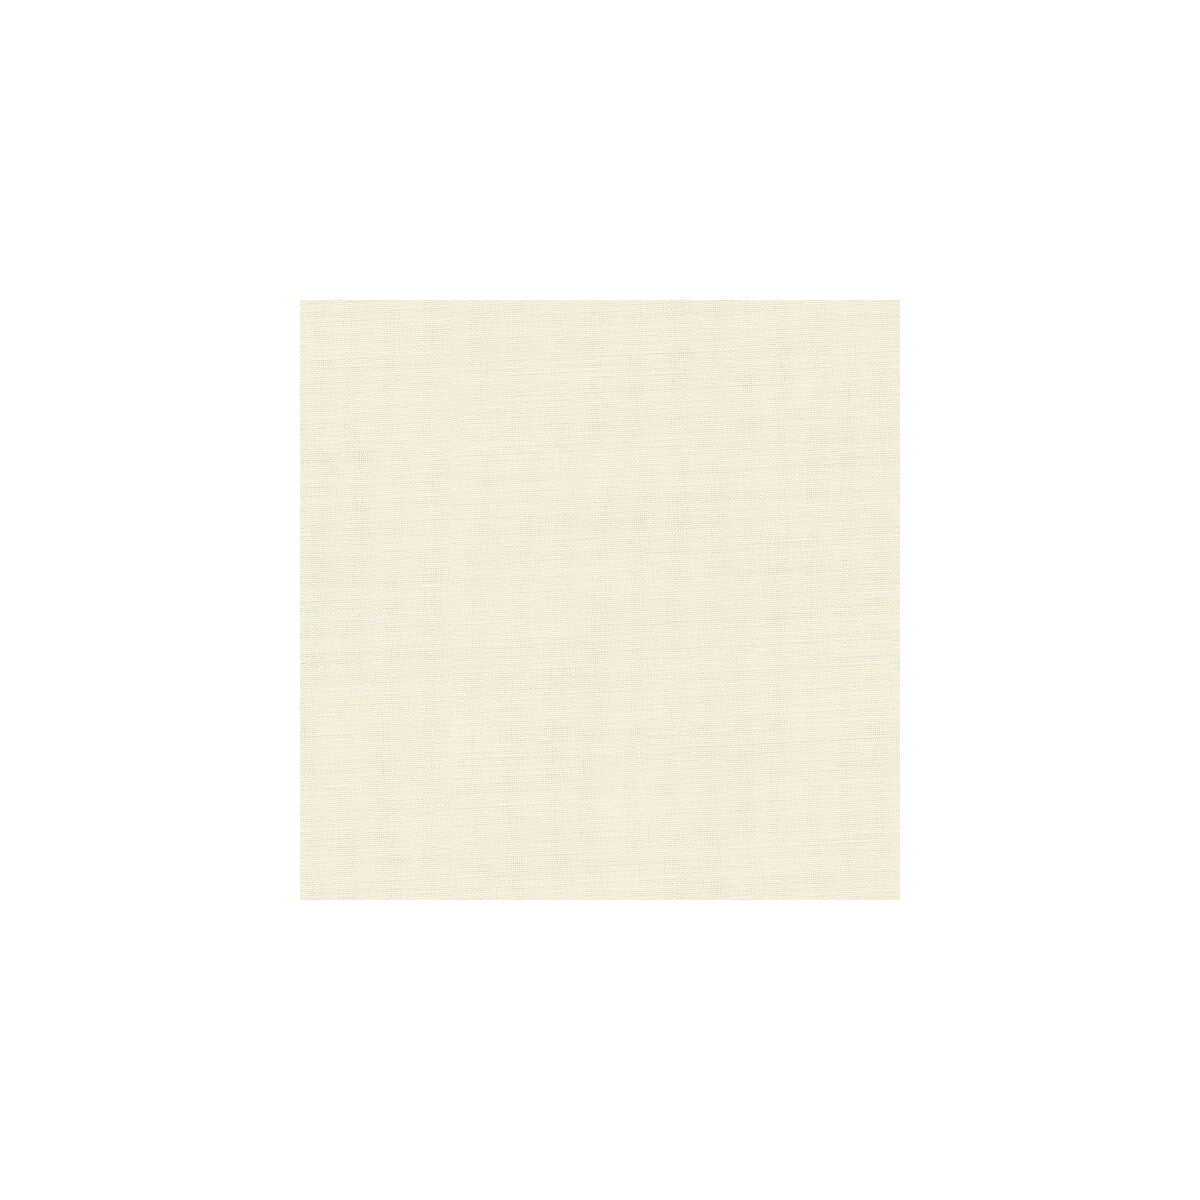 Kravet Basics fabric in 8656-111 color - pattern 8656.111.0 - by Kravet Basics